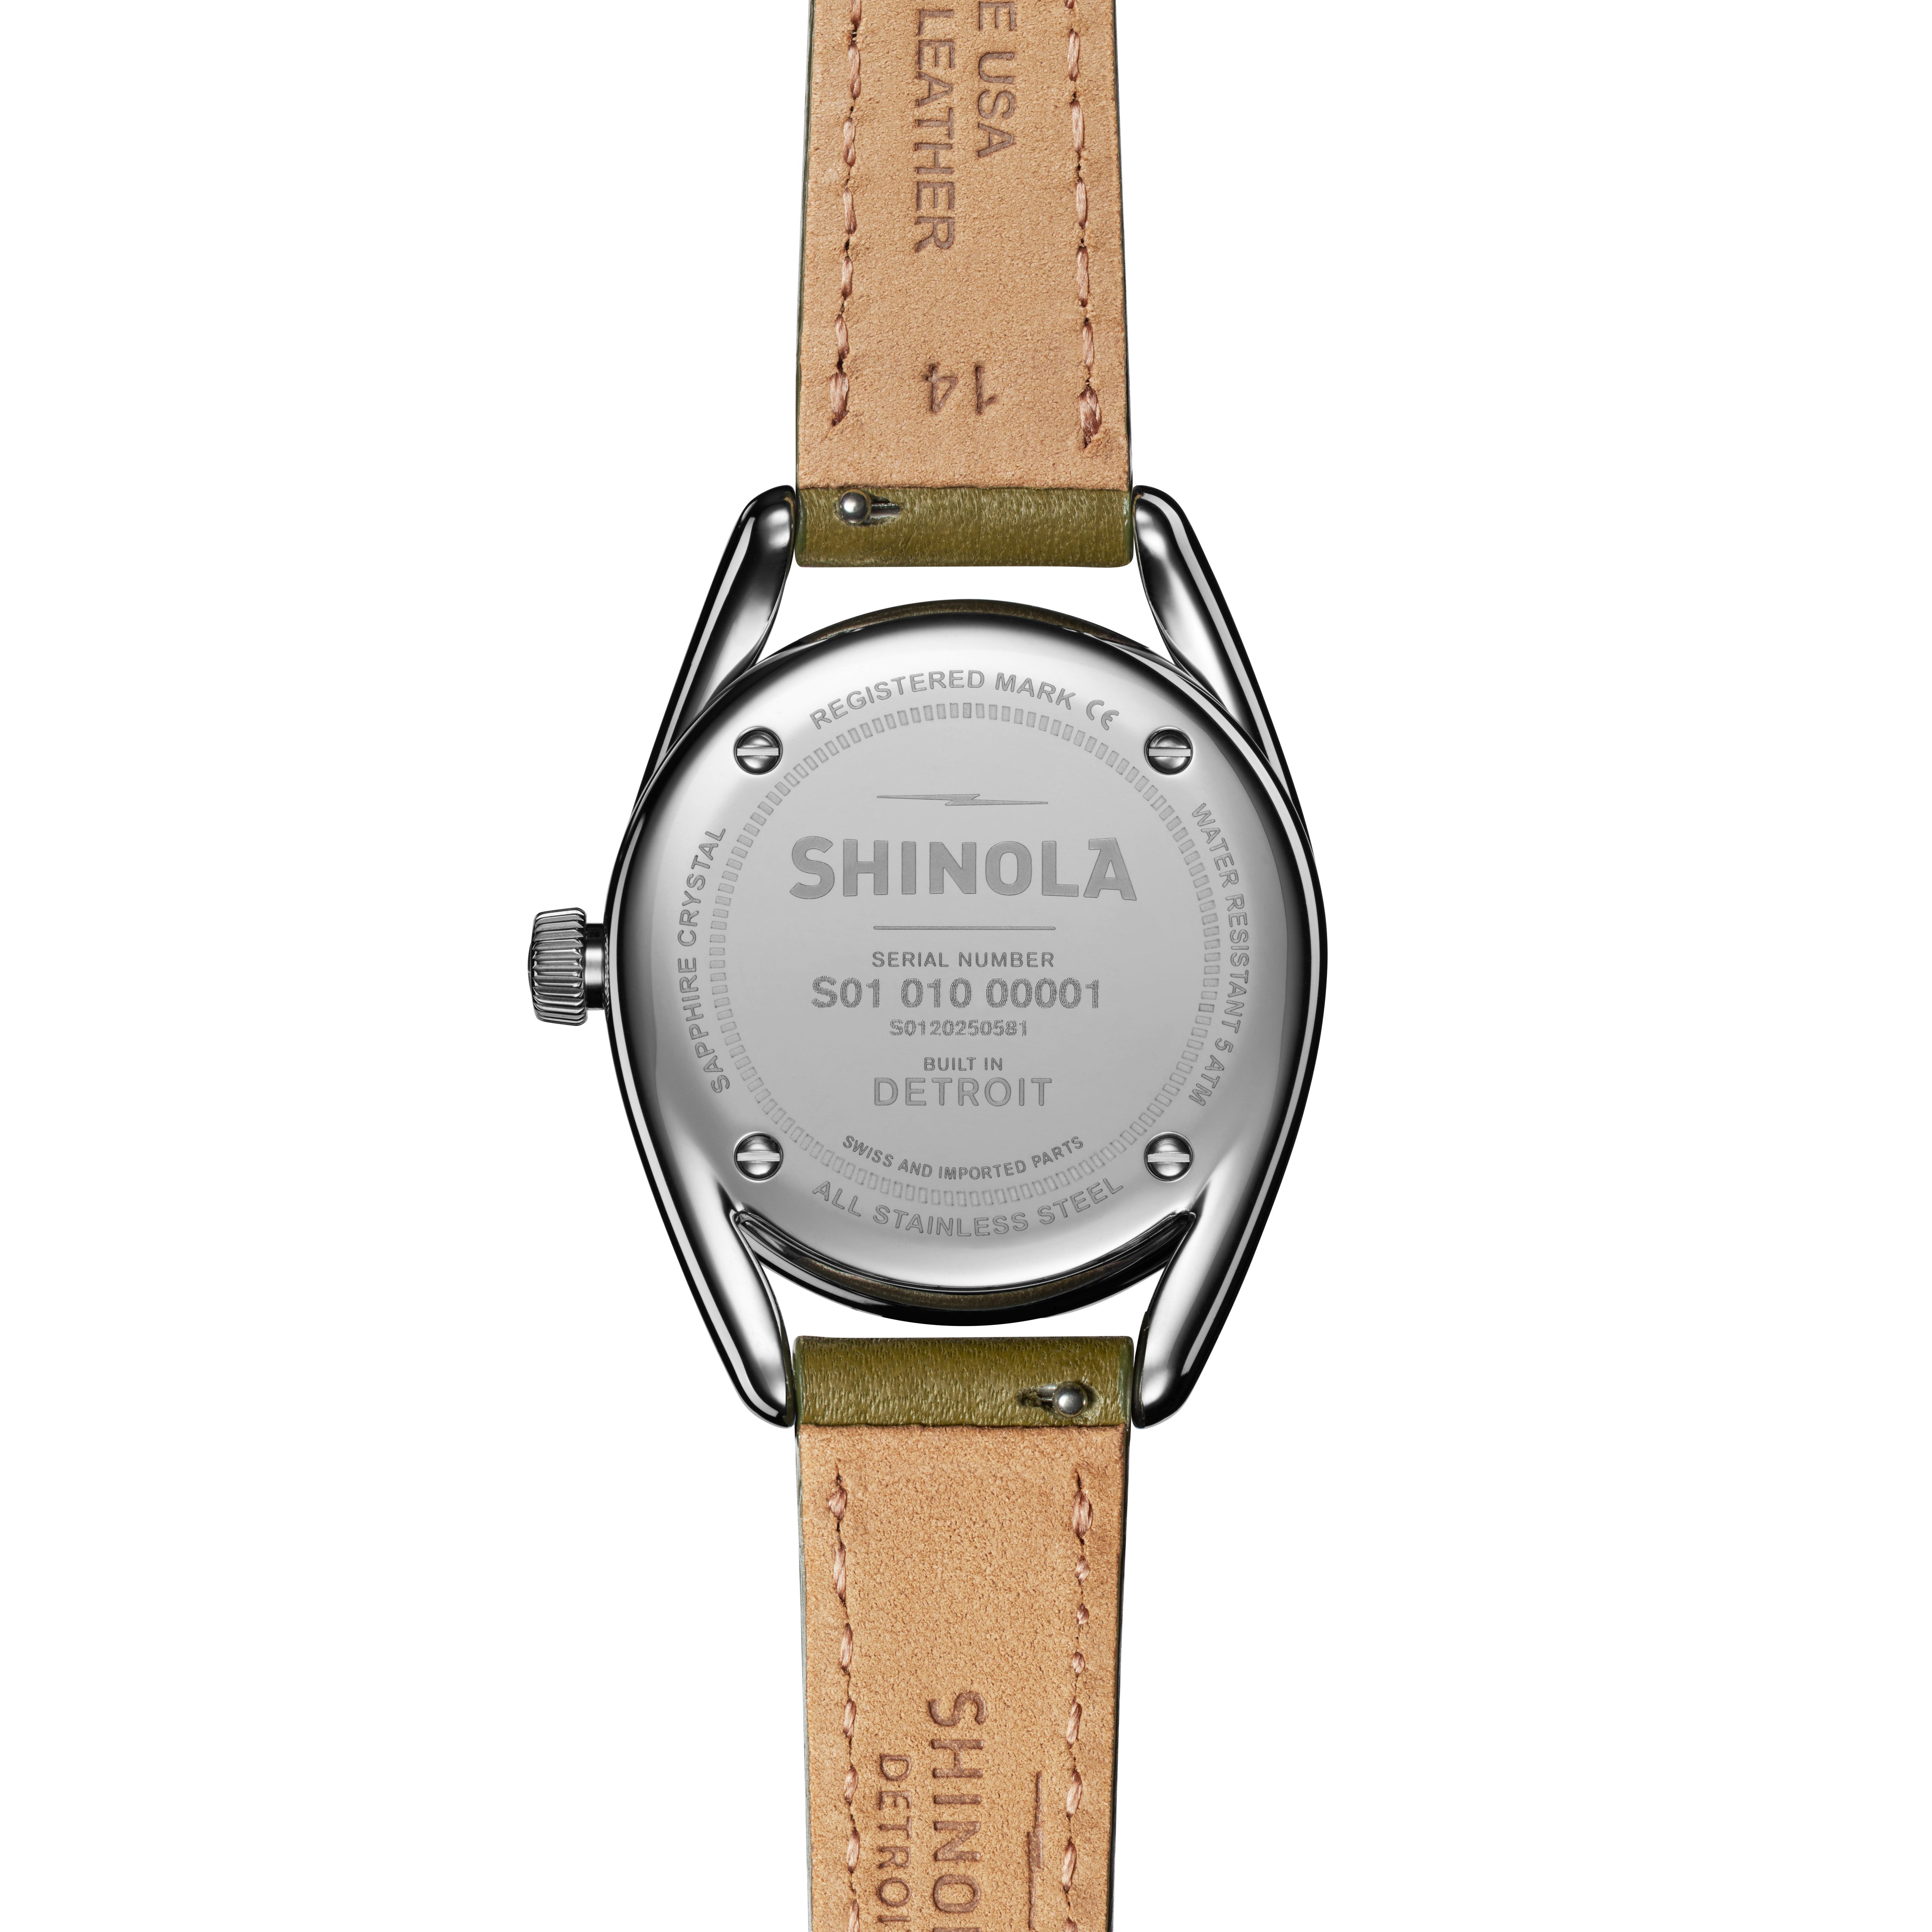 Derby 30mm Green Olive Dial s0120226478 - Shinola Derby wrist watch